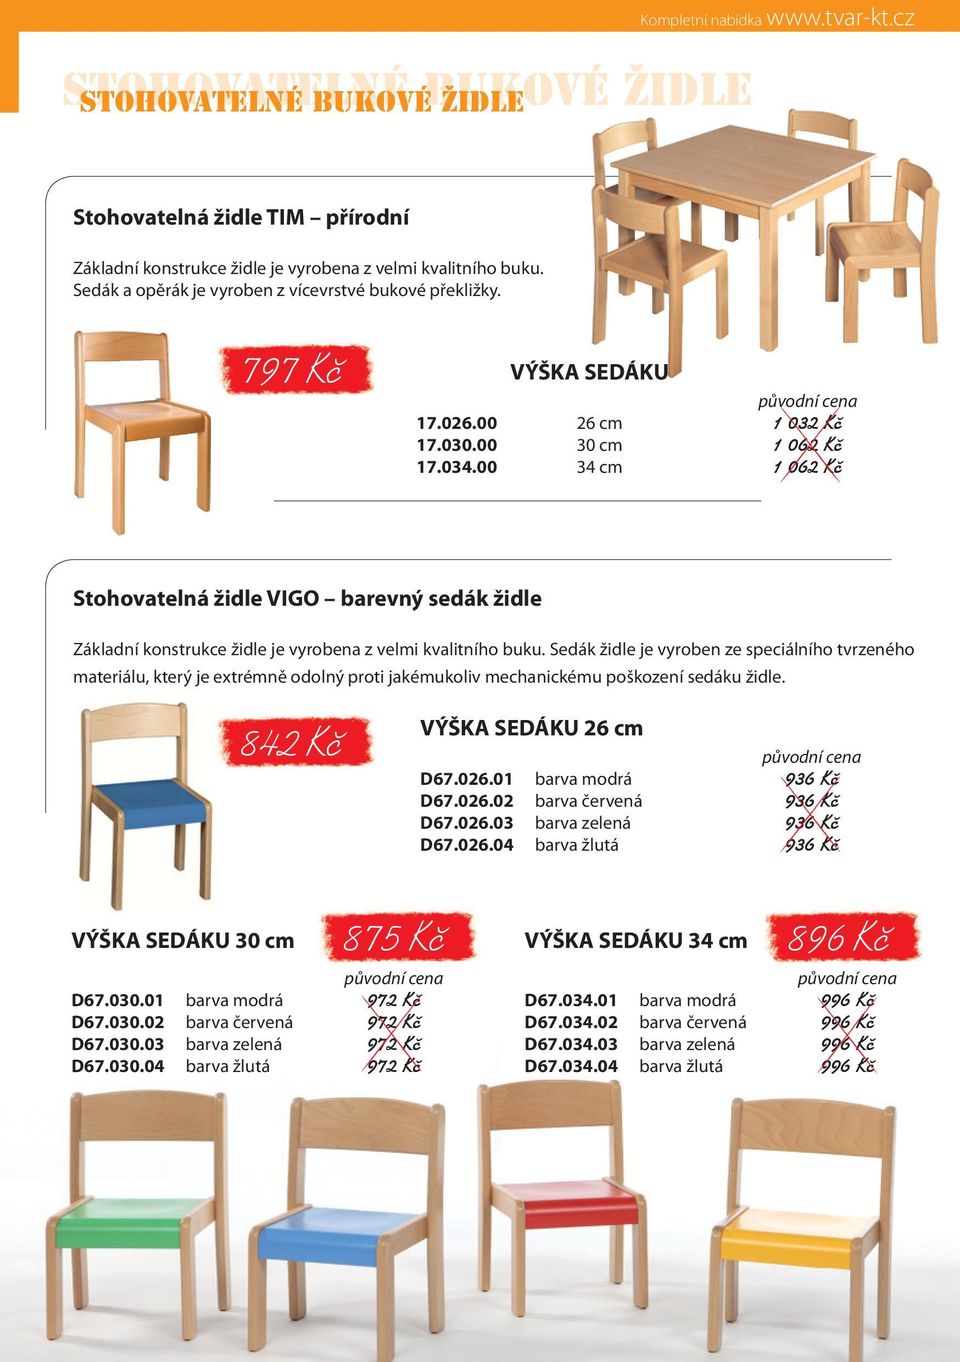 00 34 cm 1 062 Kč Stohovatelná židle VIGO barevný sedák židle Základní konstrukce židle je vyrobena z velmi kvalitního buku.